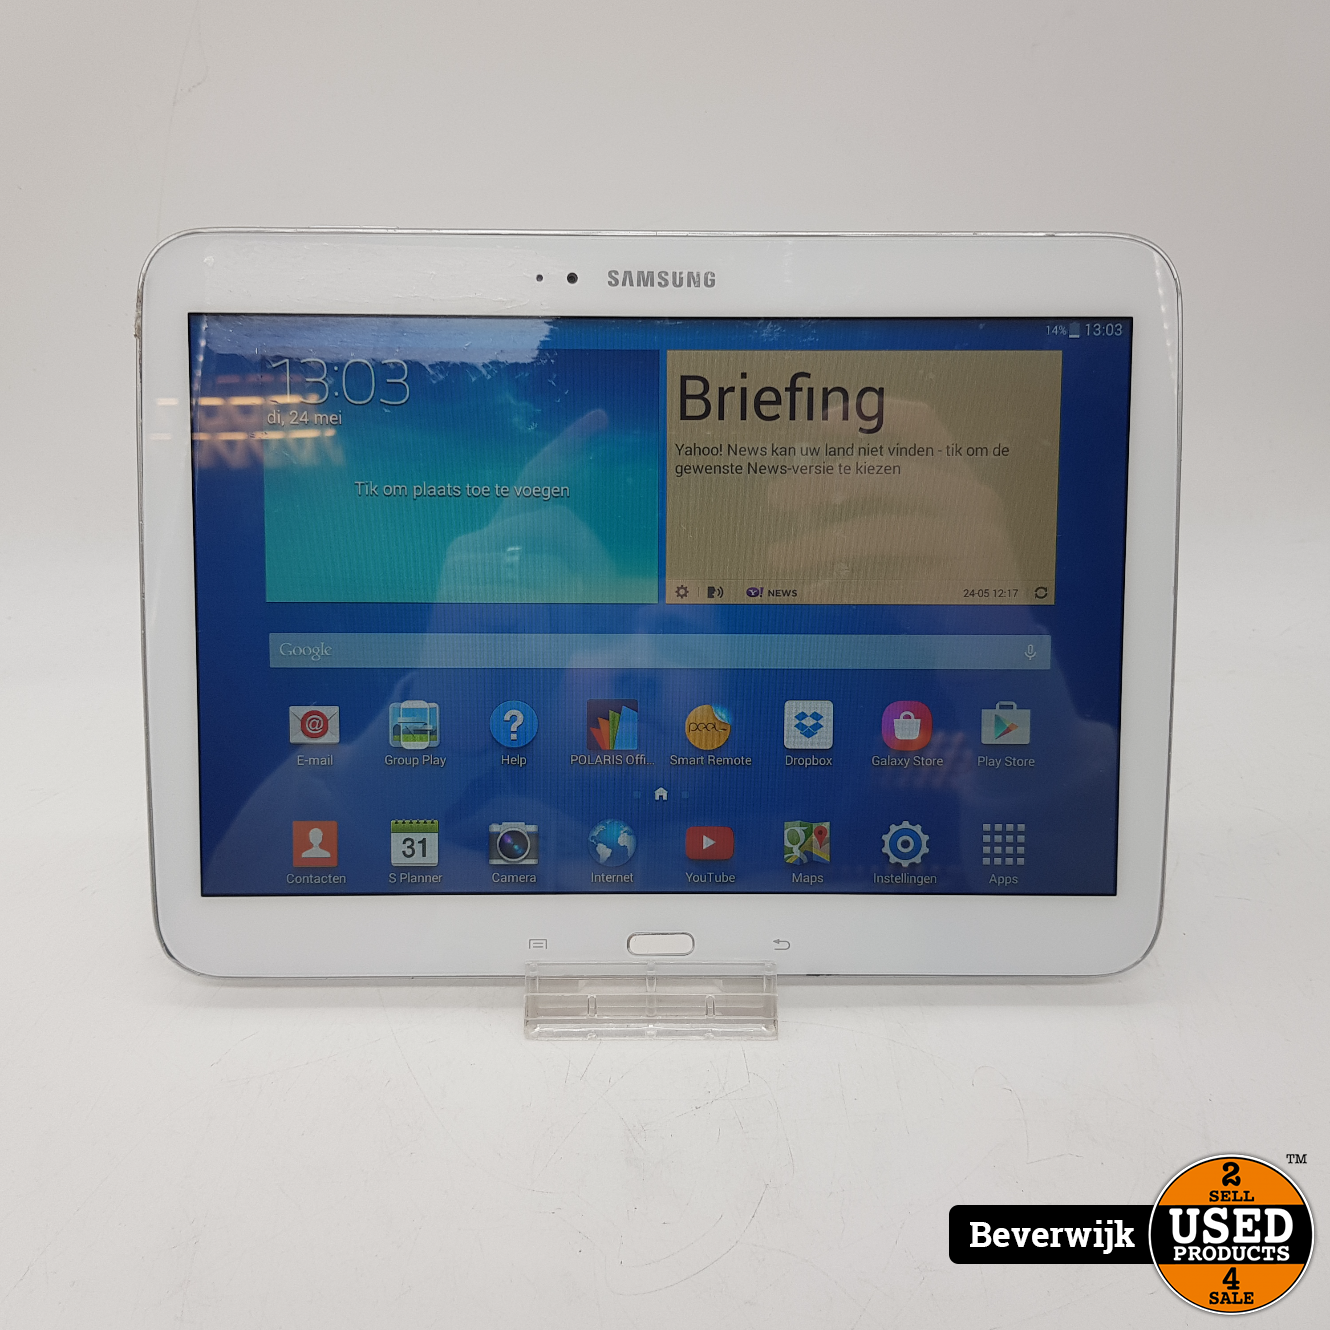 verrassing Brengen land Samsung Galaxy Tab 3 10.1 16GB Wit - In Redelijke Staat! - Used Products  Beverwijk